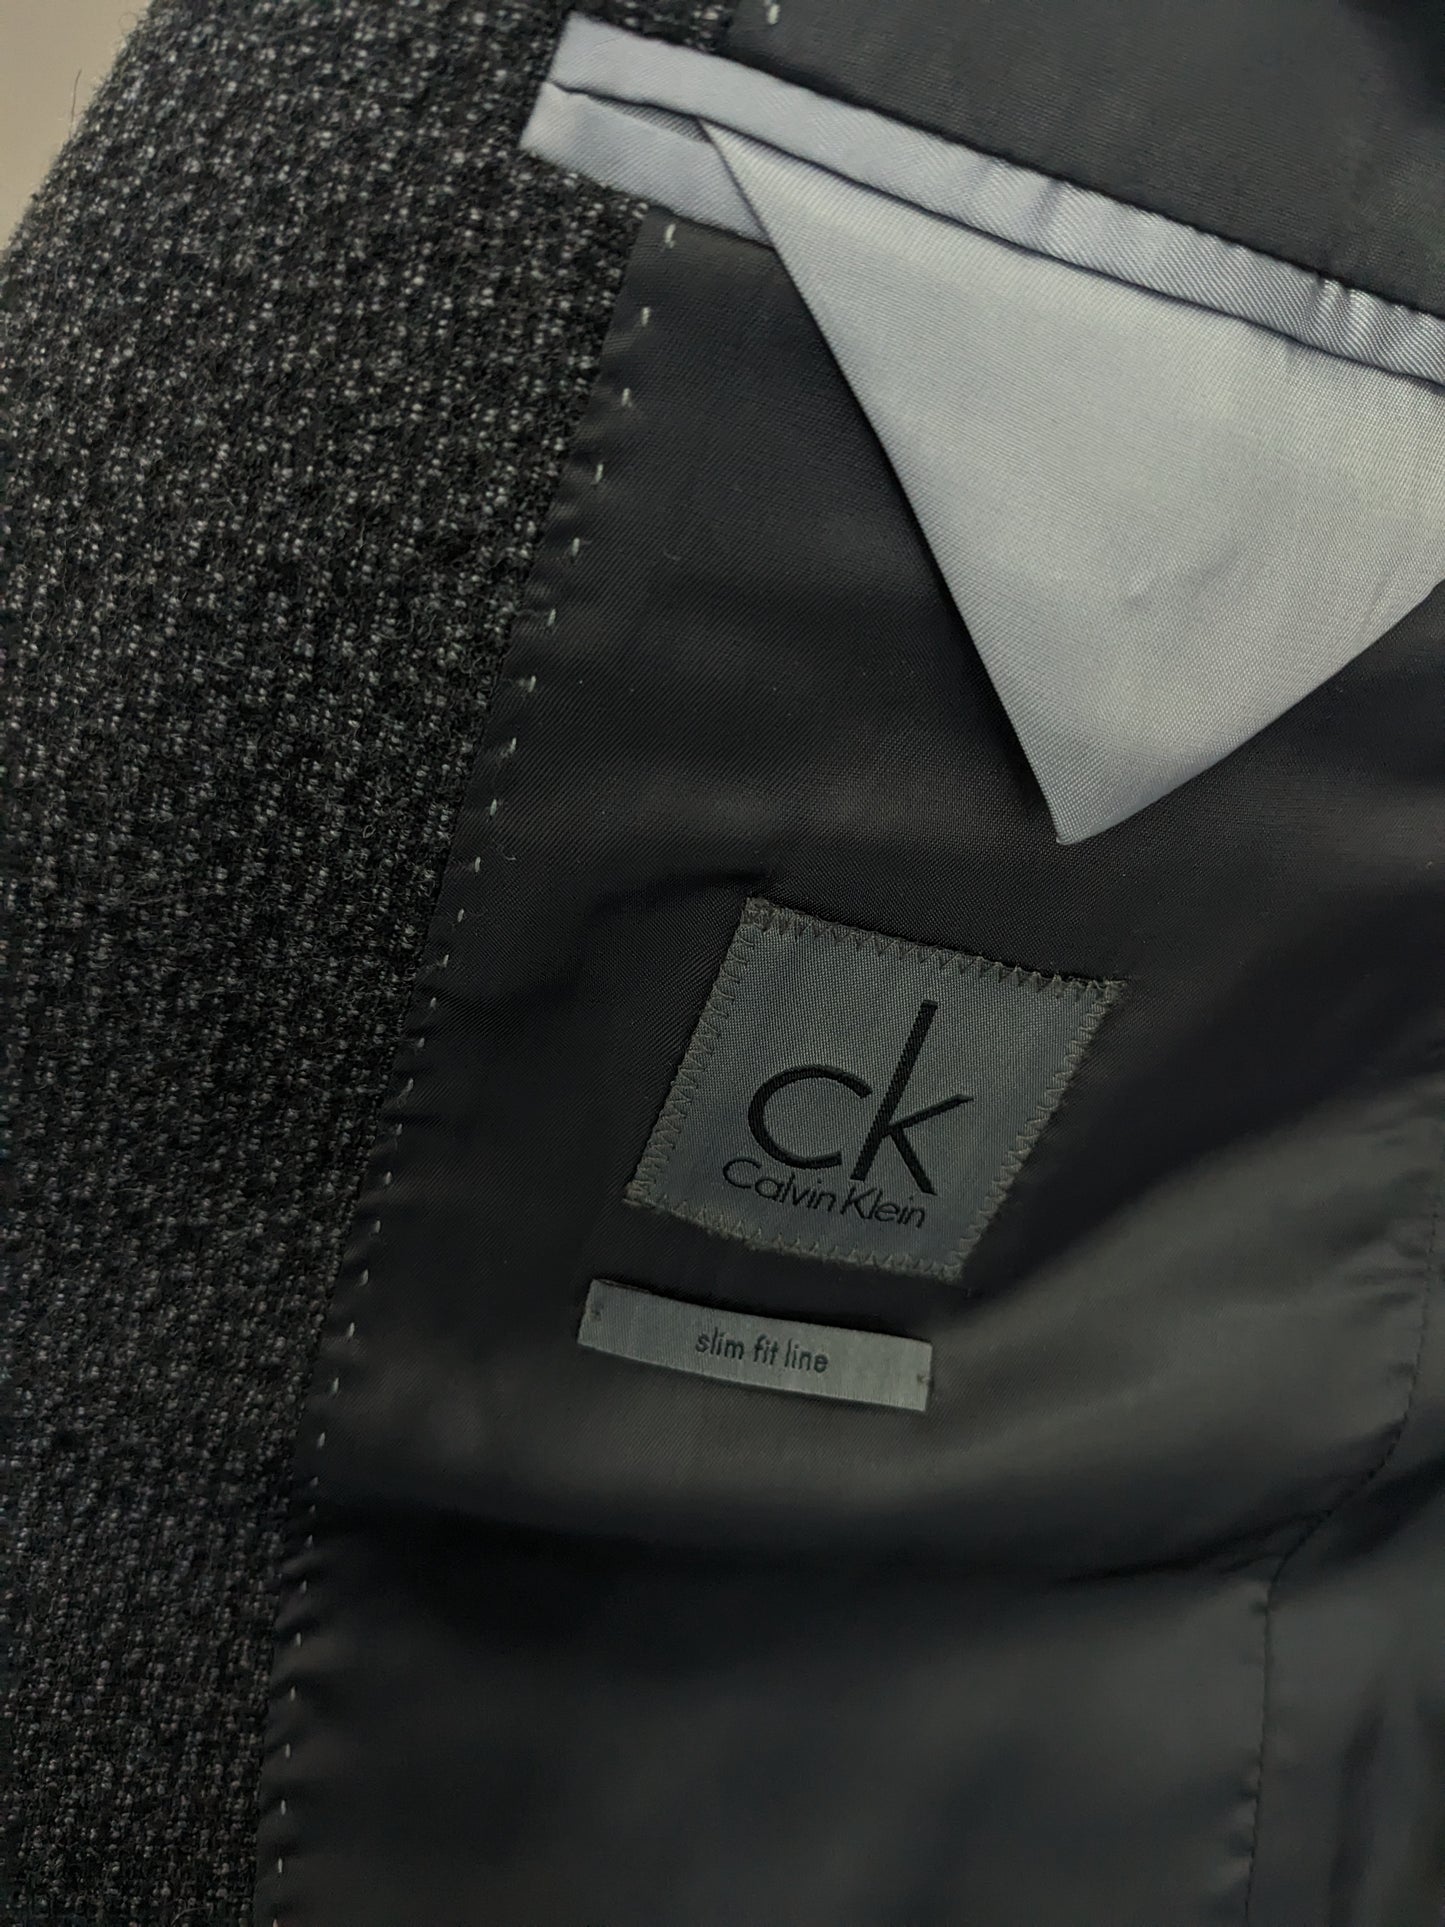 CK Calvin Klein Wainen Veste. Motif mixte noir gris. Taille 50 / M. Slim Fit.